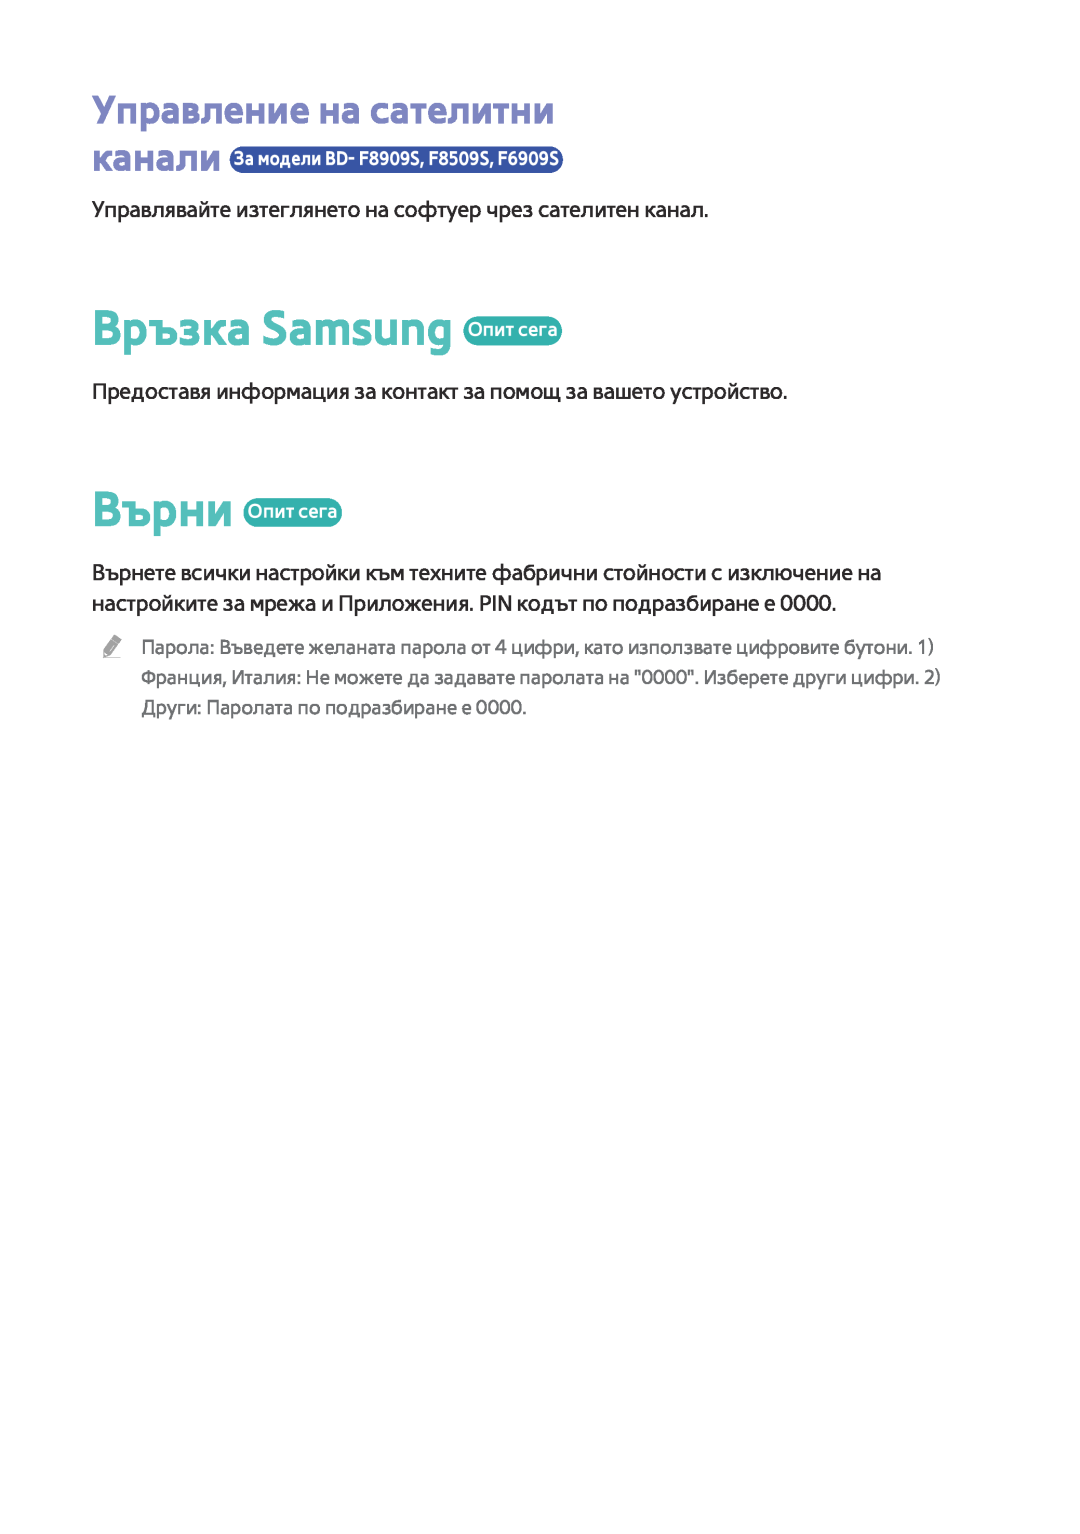 Samsung BD-F8500/EN, BD-F6900/EN manual Връзка Samsung Опит сега, Управление на сателитни 